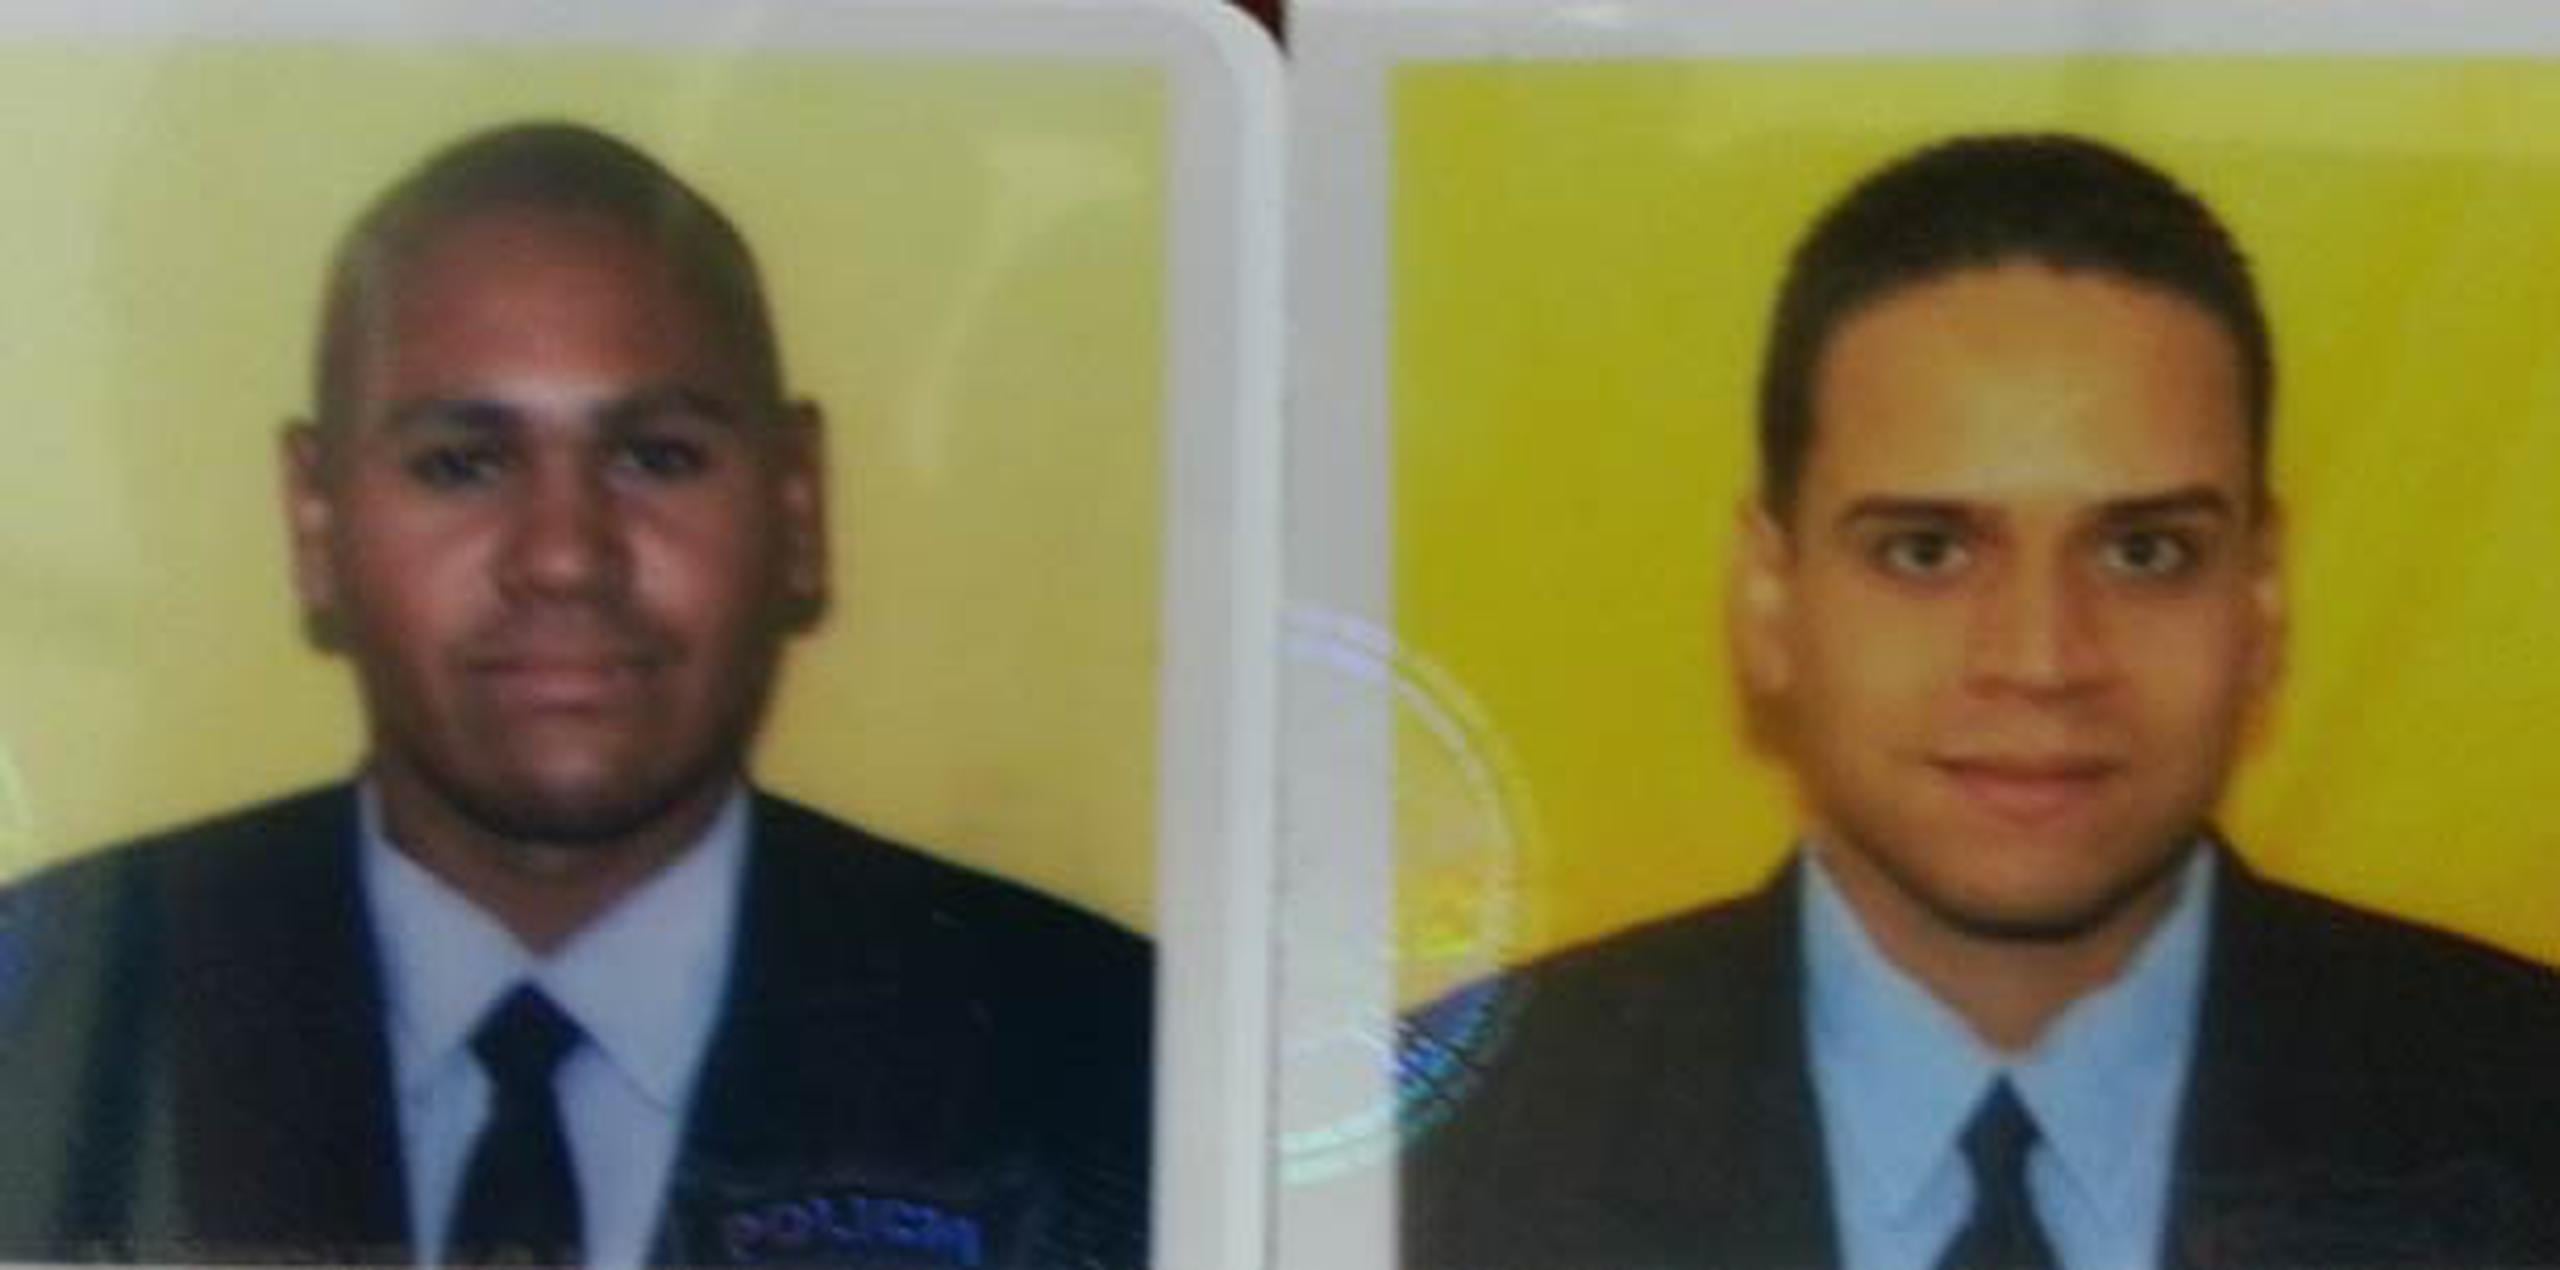 Según la Fiscalía, William Vázquez Tirado hirió de bala a los agentes Geniel Amaro Fantauzzi y Julio Mundo Feliciano. (Suministrada)